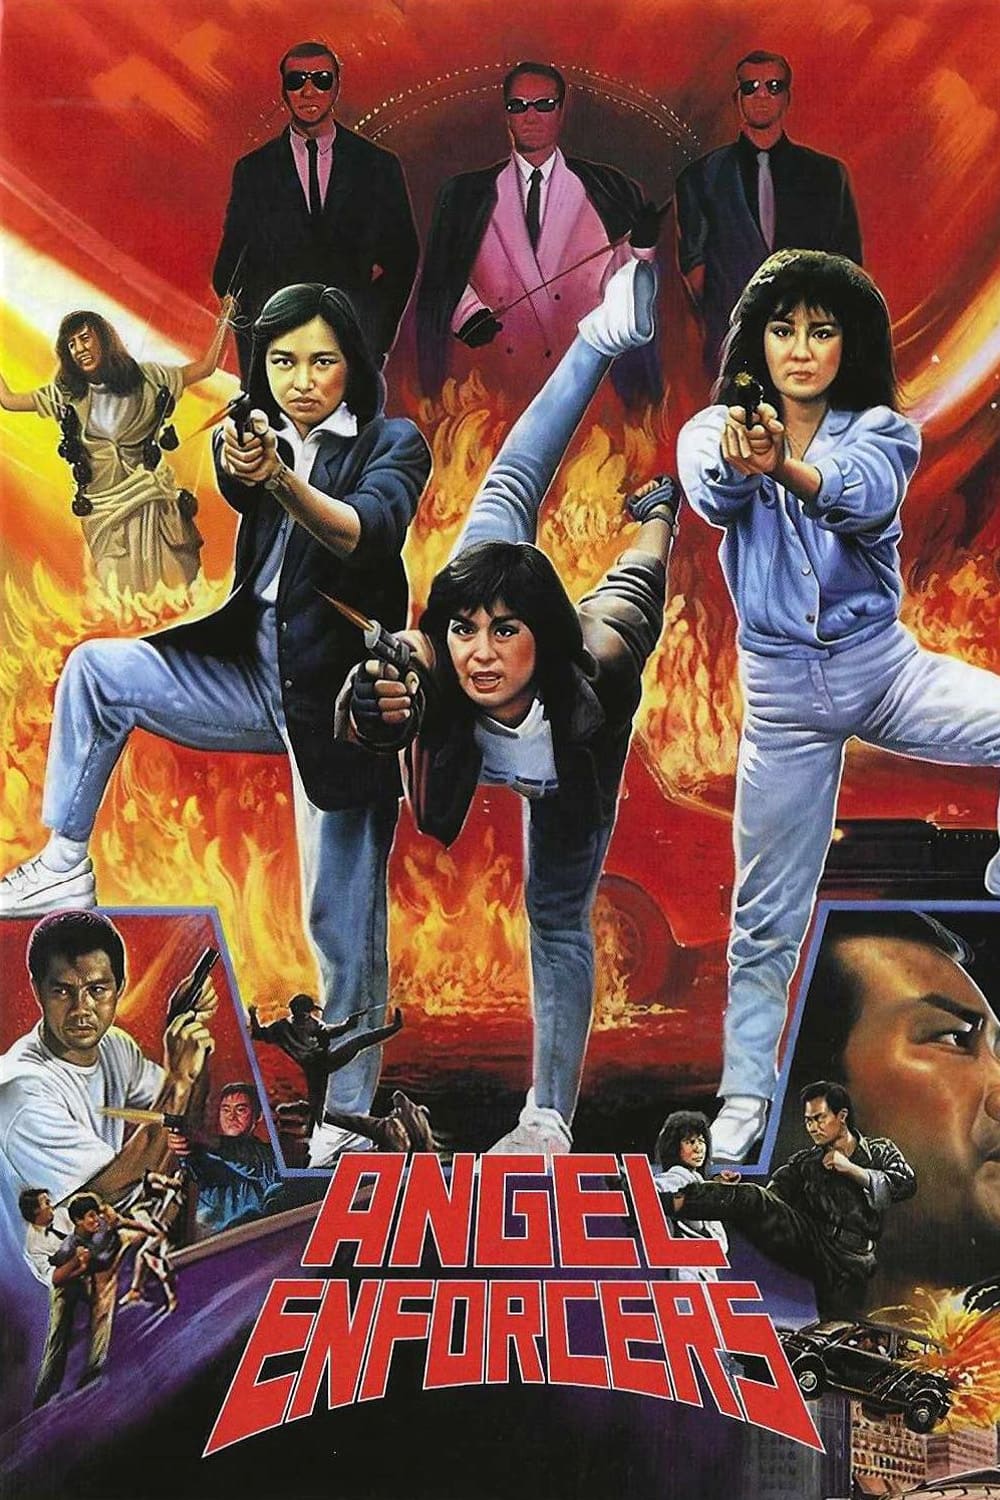 Angel Enforcers (1989)